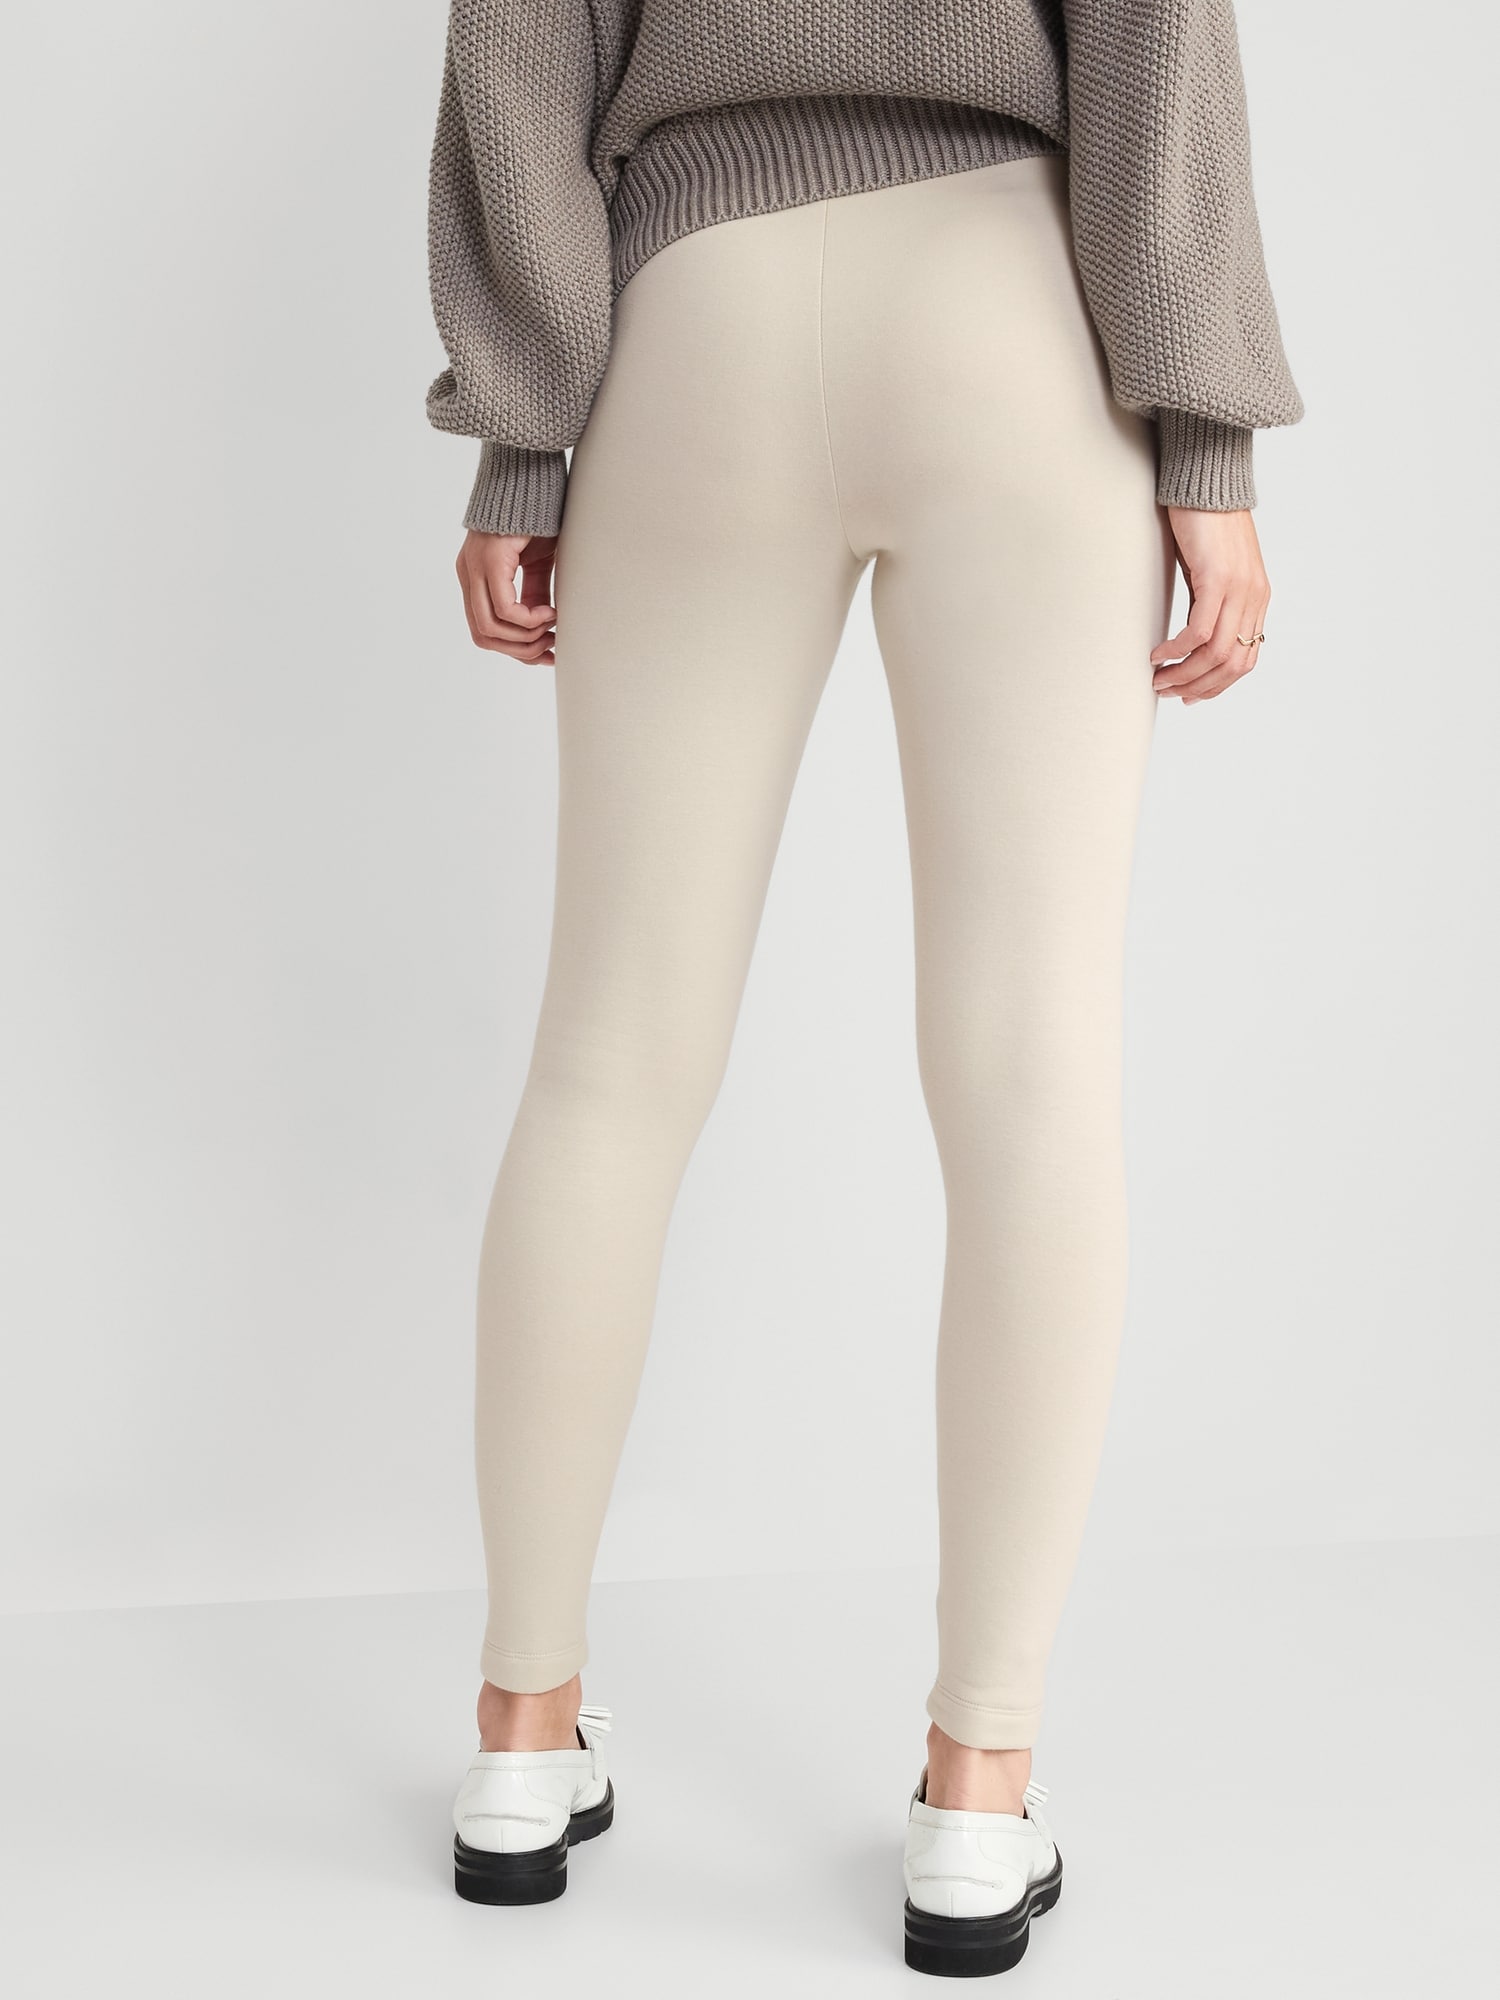 Women Winter Lined Elastic Velvet Thermal Fleece Pants Stretch Thick Leggings  UK | eBay